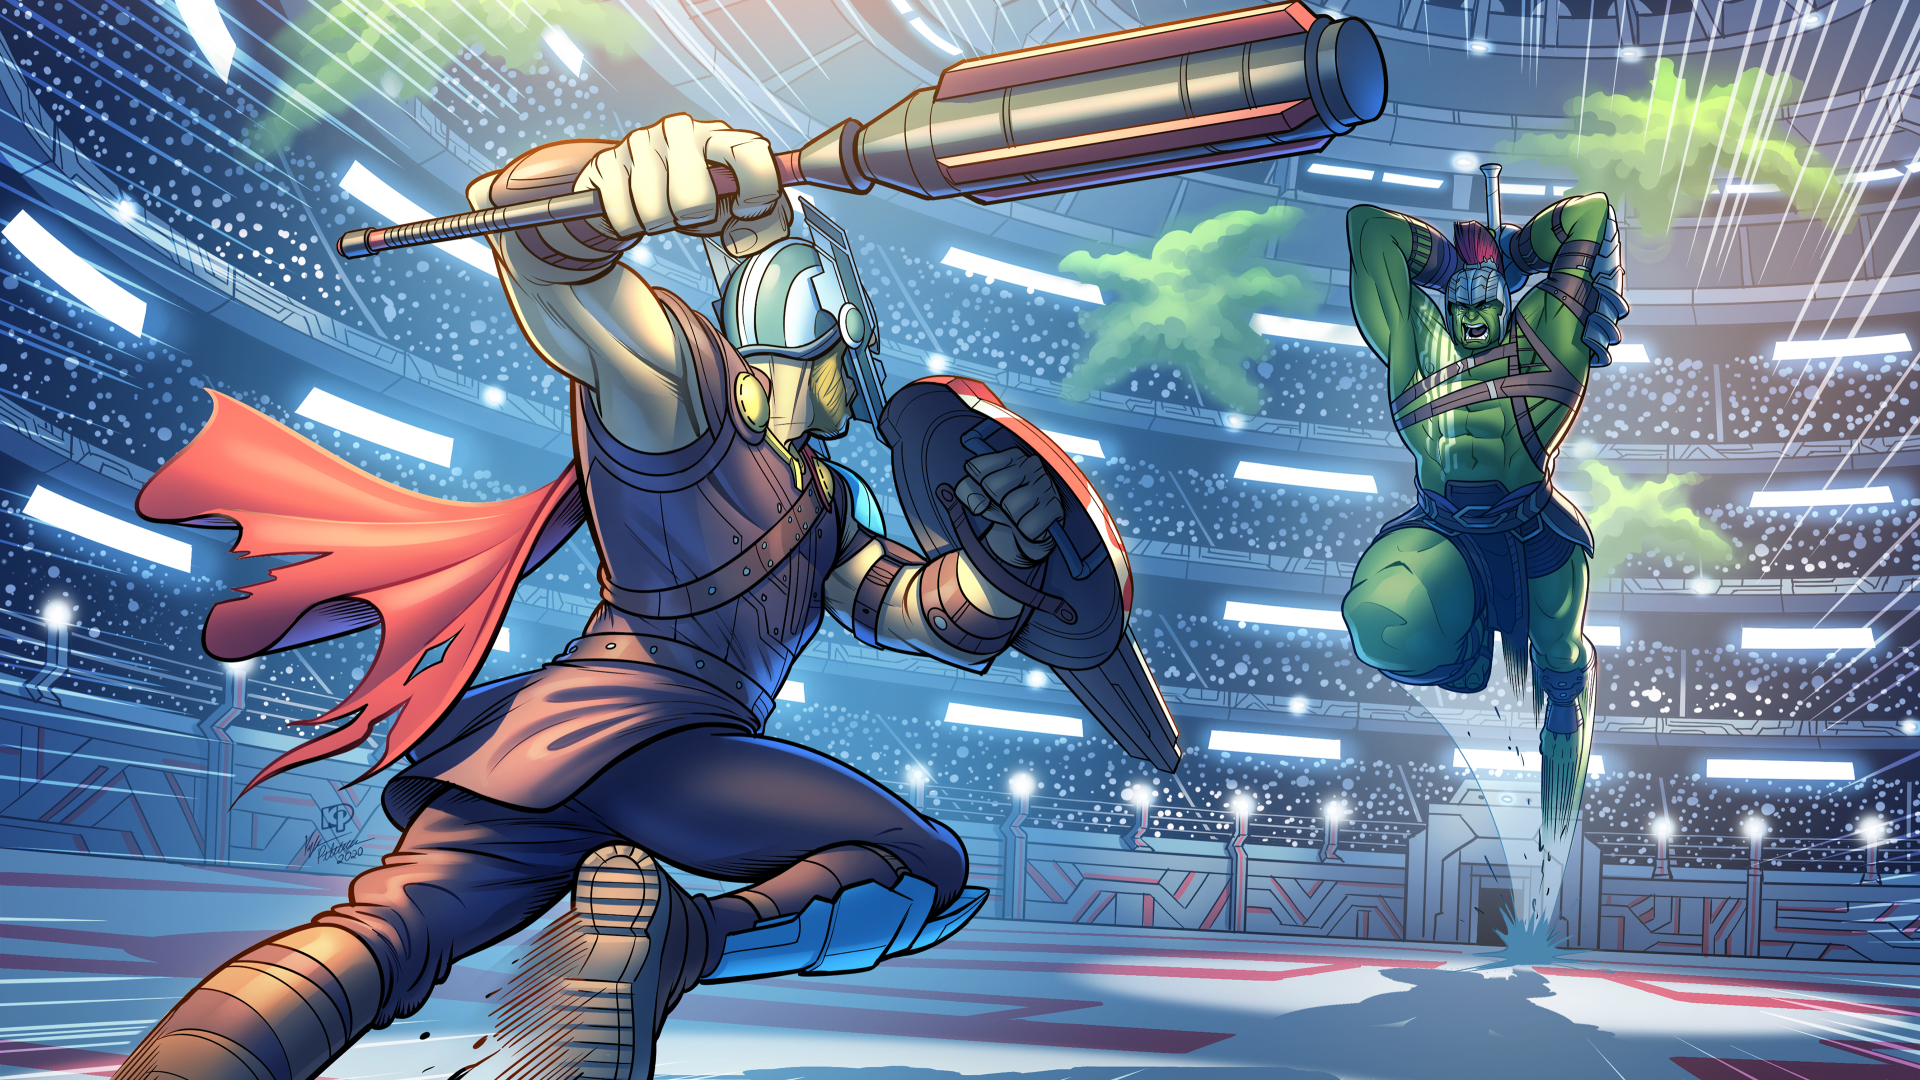 1920x1080xx4c3d9ee8 Resolution Hulk vs Thor Ragnarok Fight Marvel 1080P ...